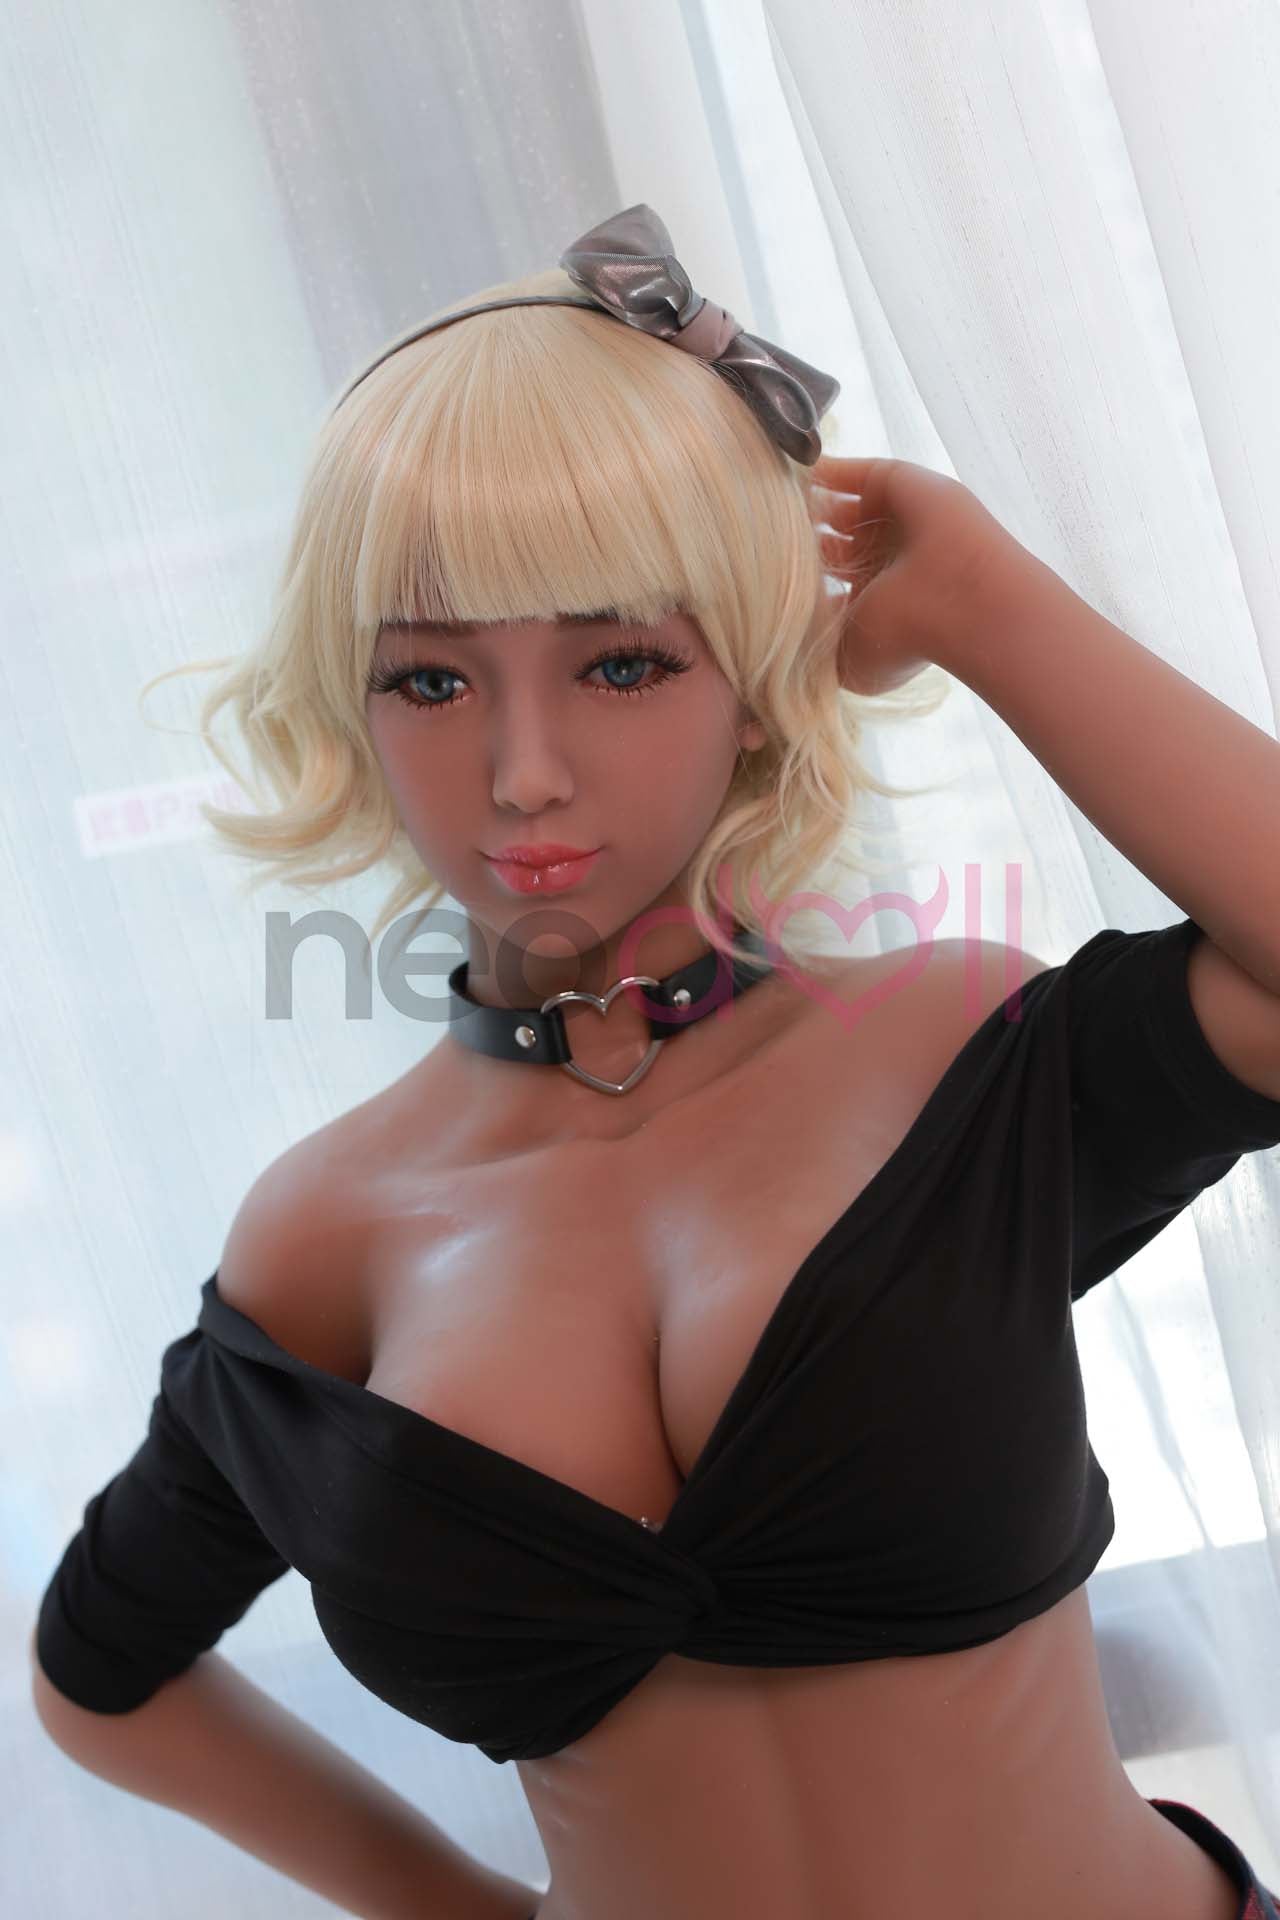 Neodoll Sugar Babe - Ujjwala - Realistic Sex Doll - 150cm - Wheat